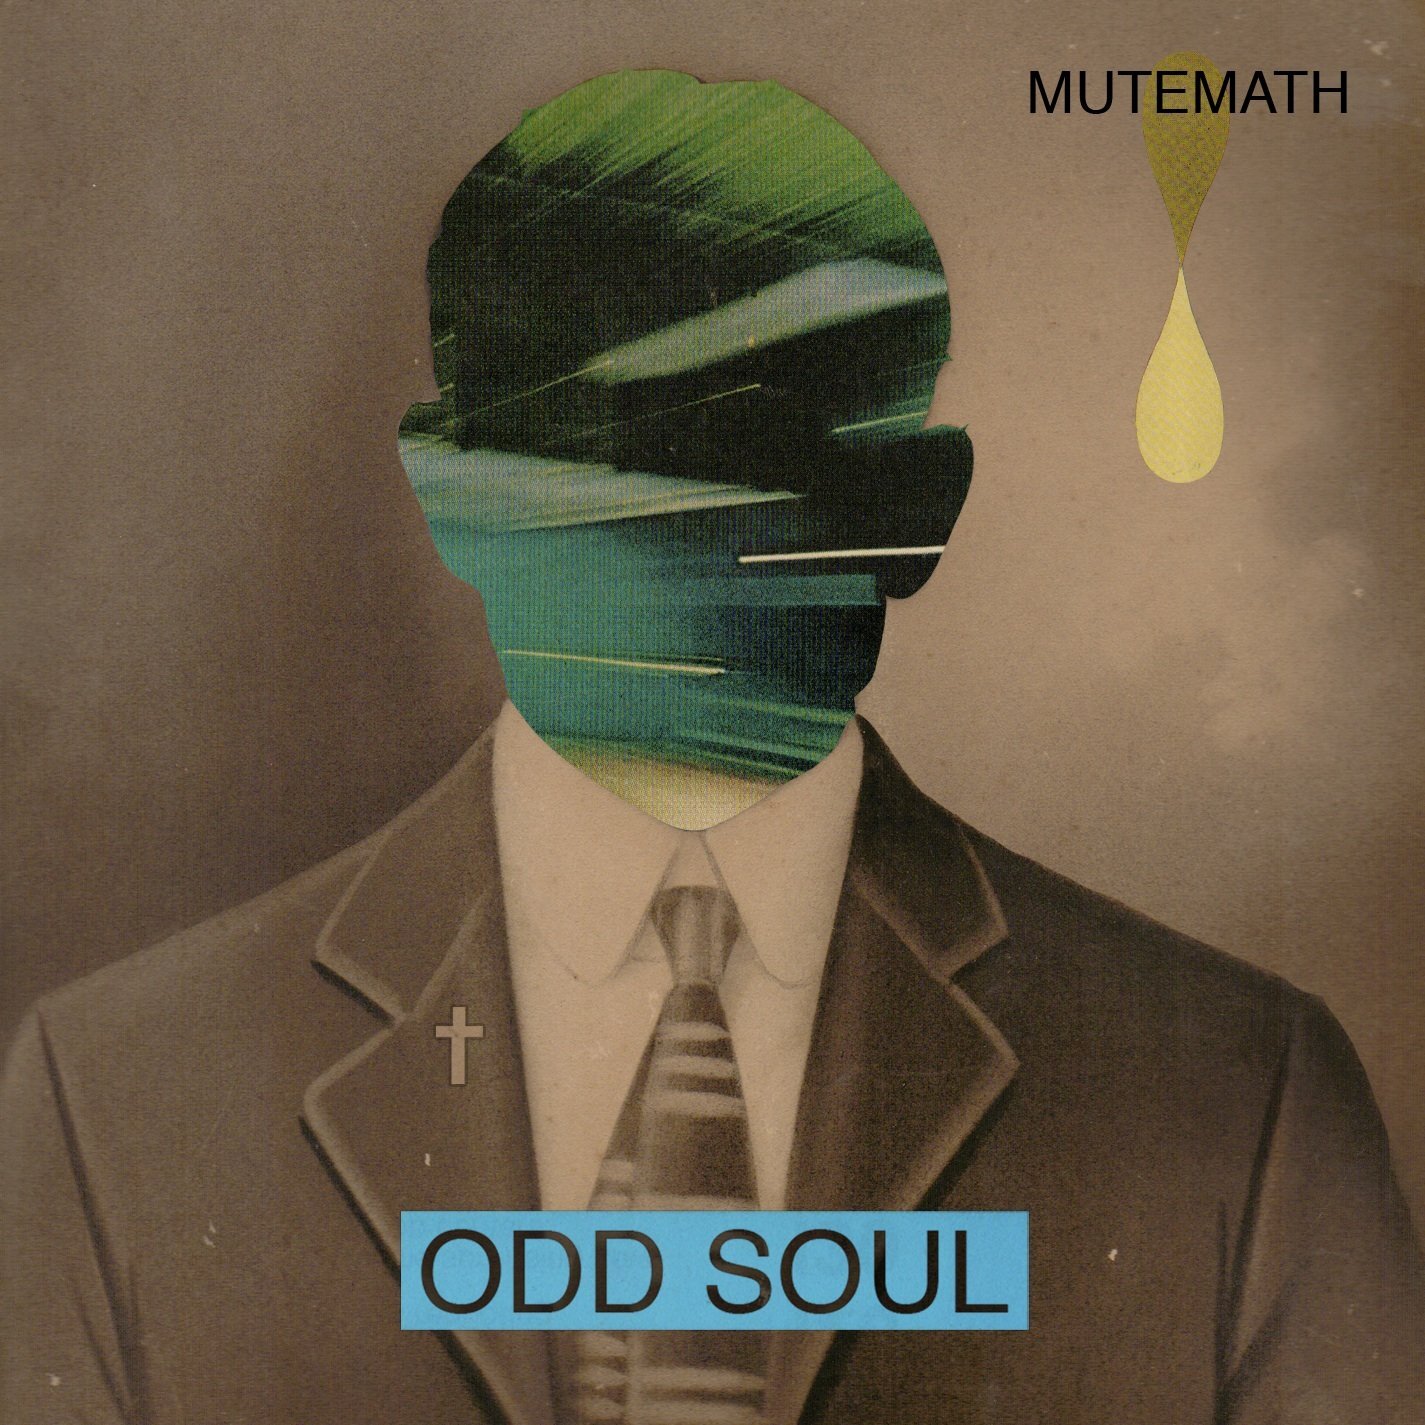 Mutemath - Odd Soul (Guitar Pedals on Bass)